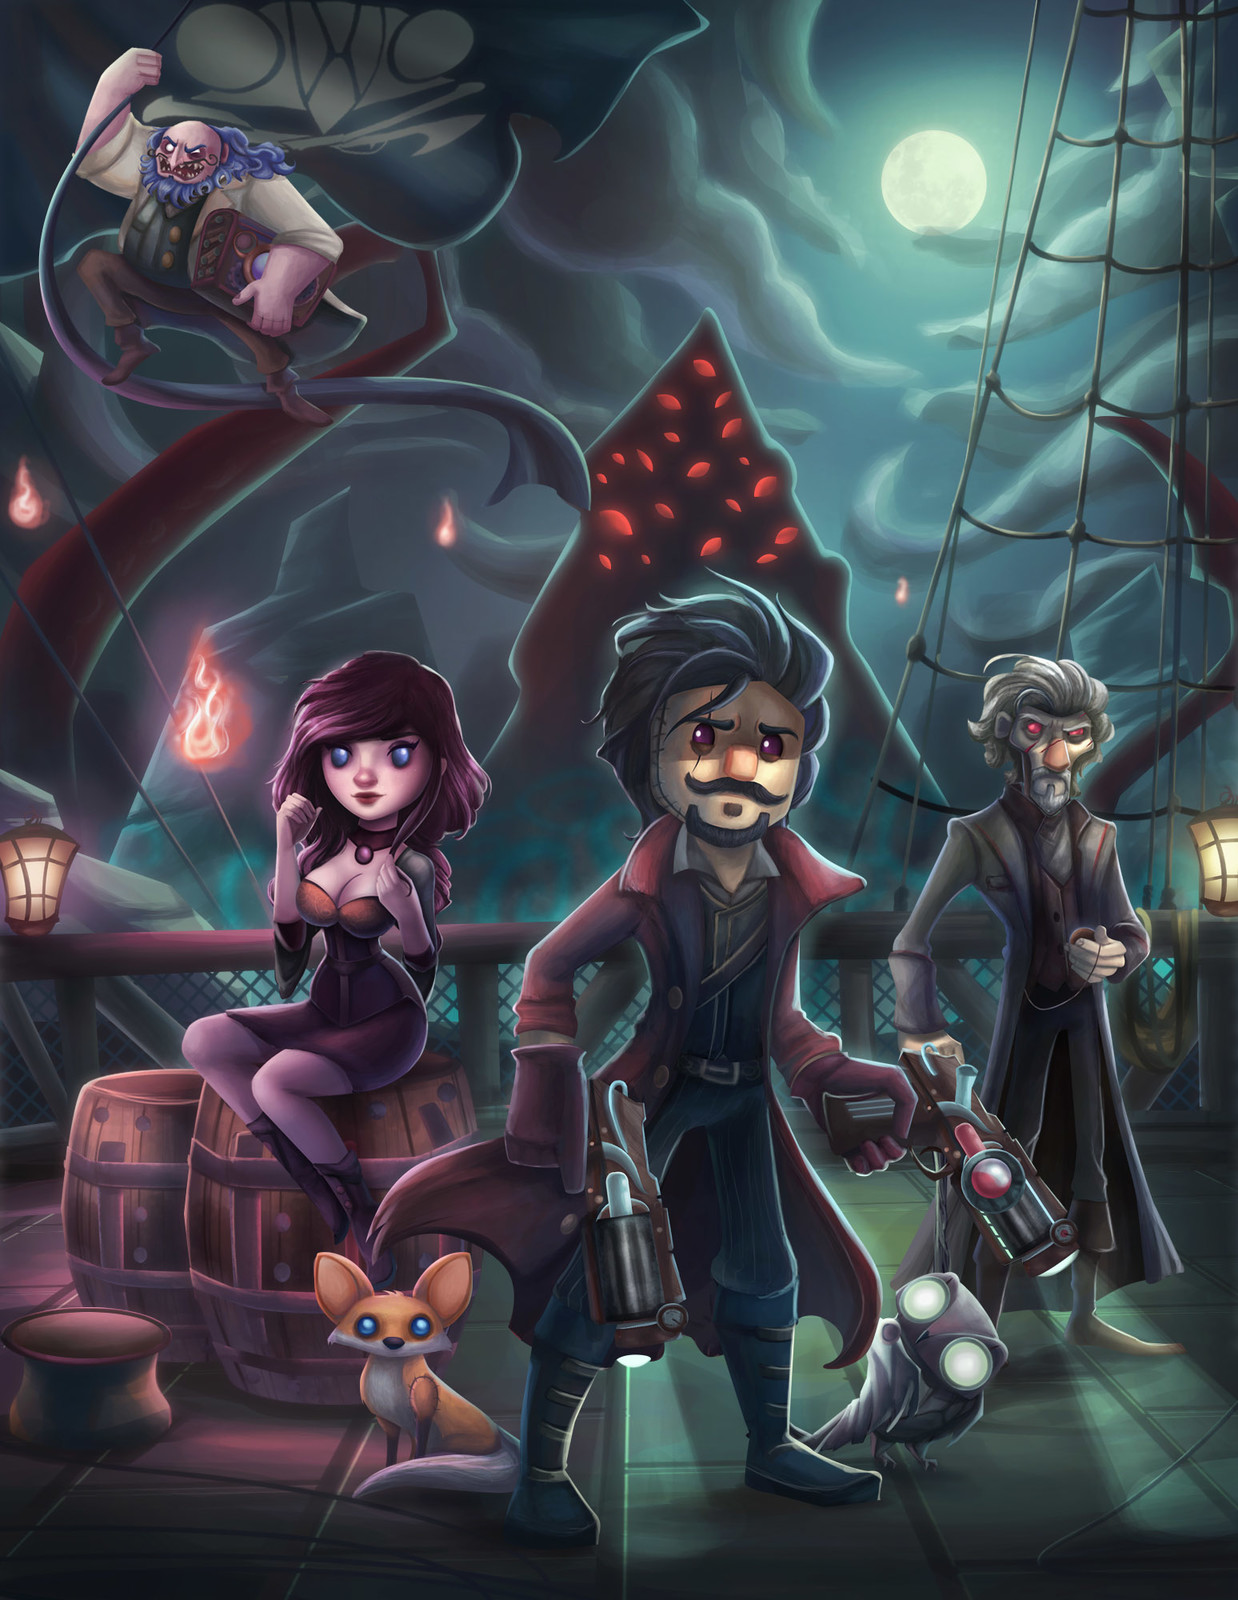 Pirates book cover